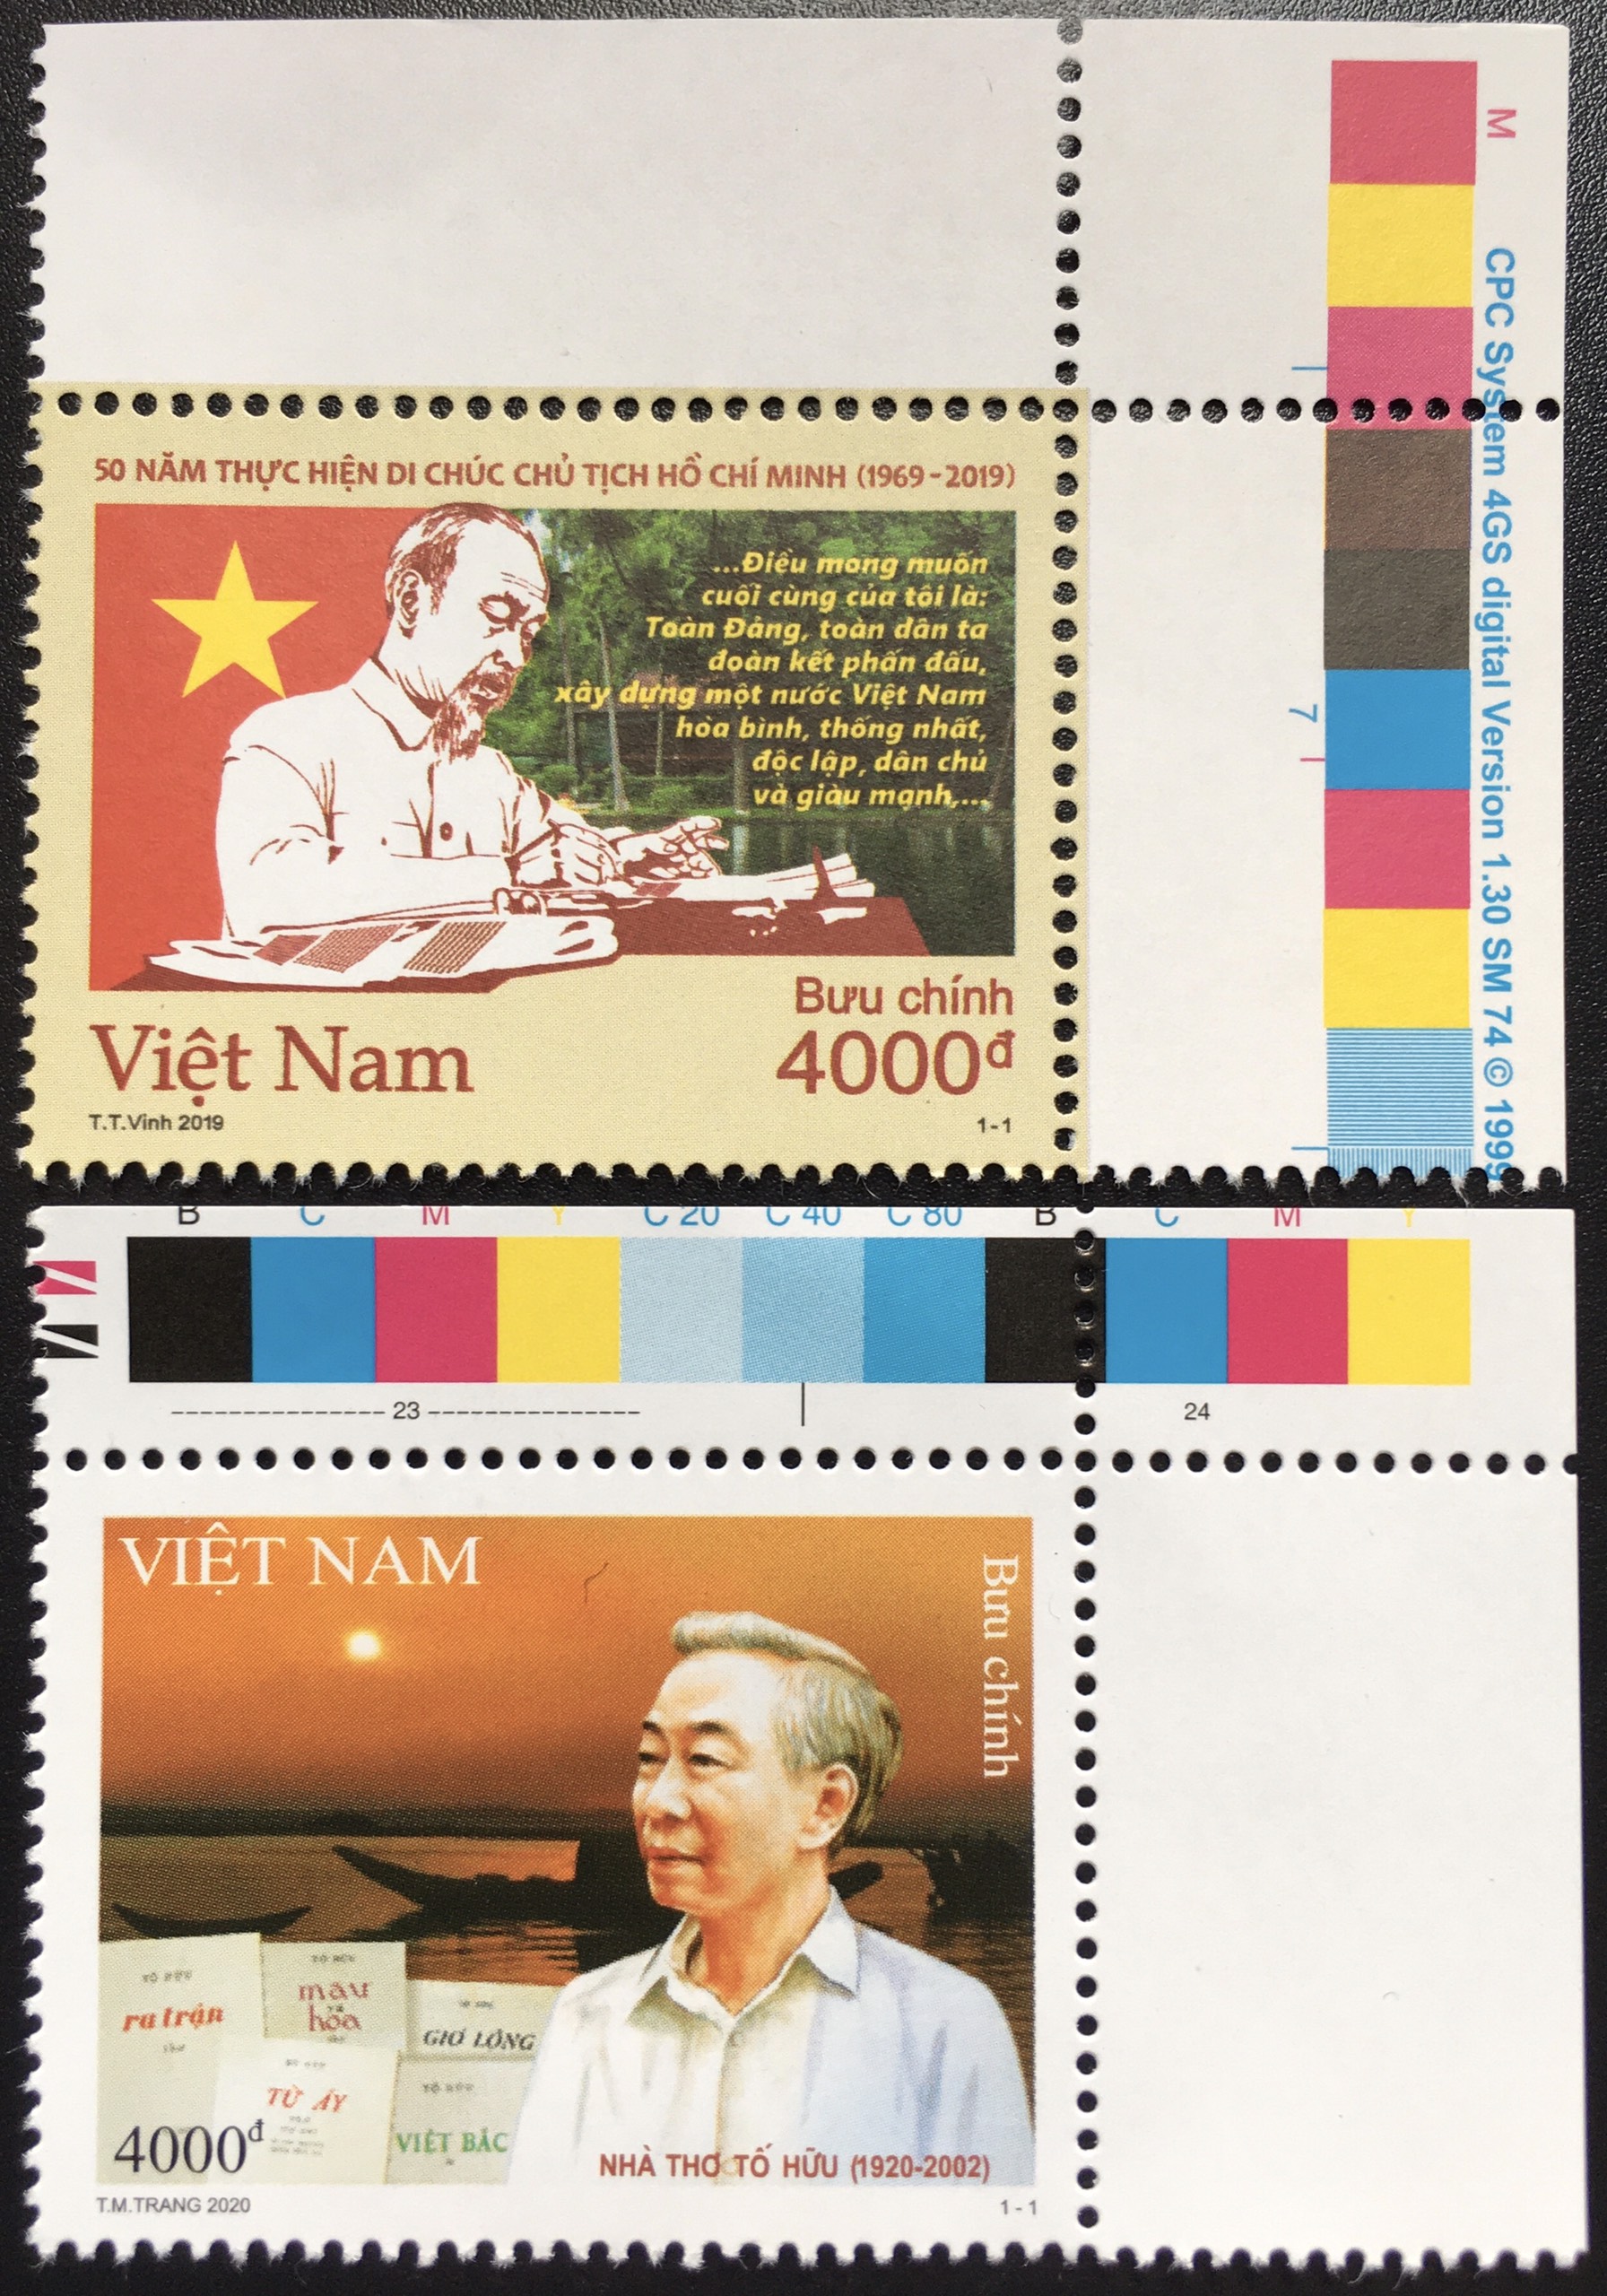 Bộ Tem Sưu Tầm Việt Nam 2020 Bác Hồ và Nhà Thơ Tố Hữu - 2 Stamps